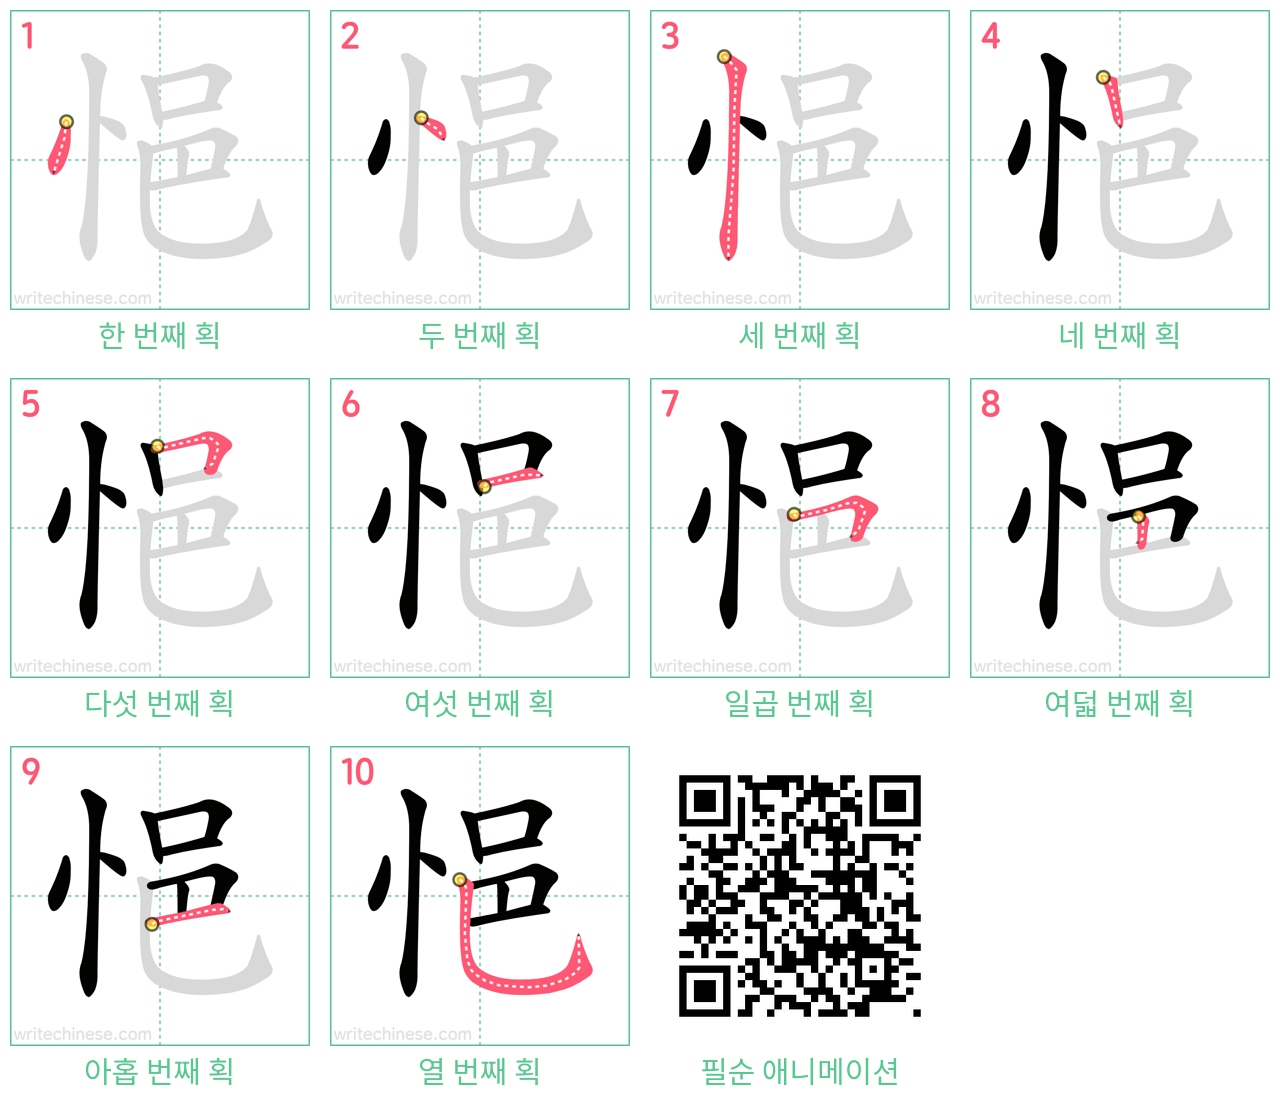 悒 step-by-step stroke order diagrams